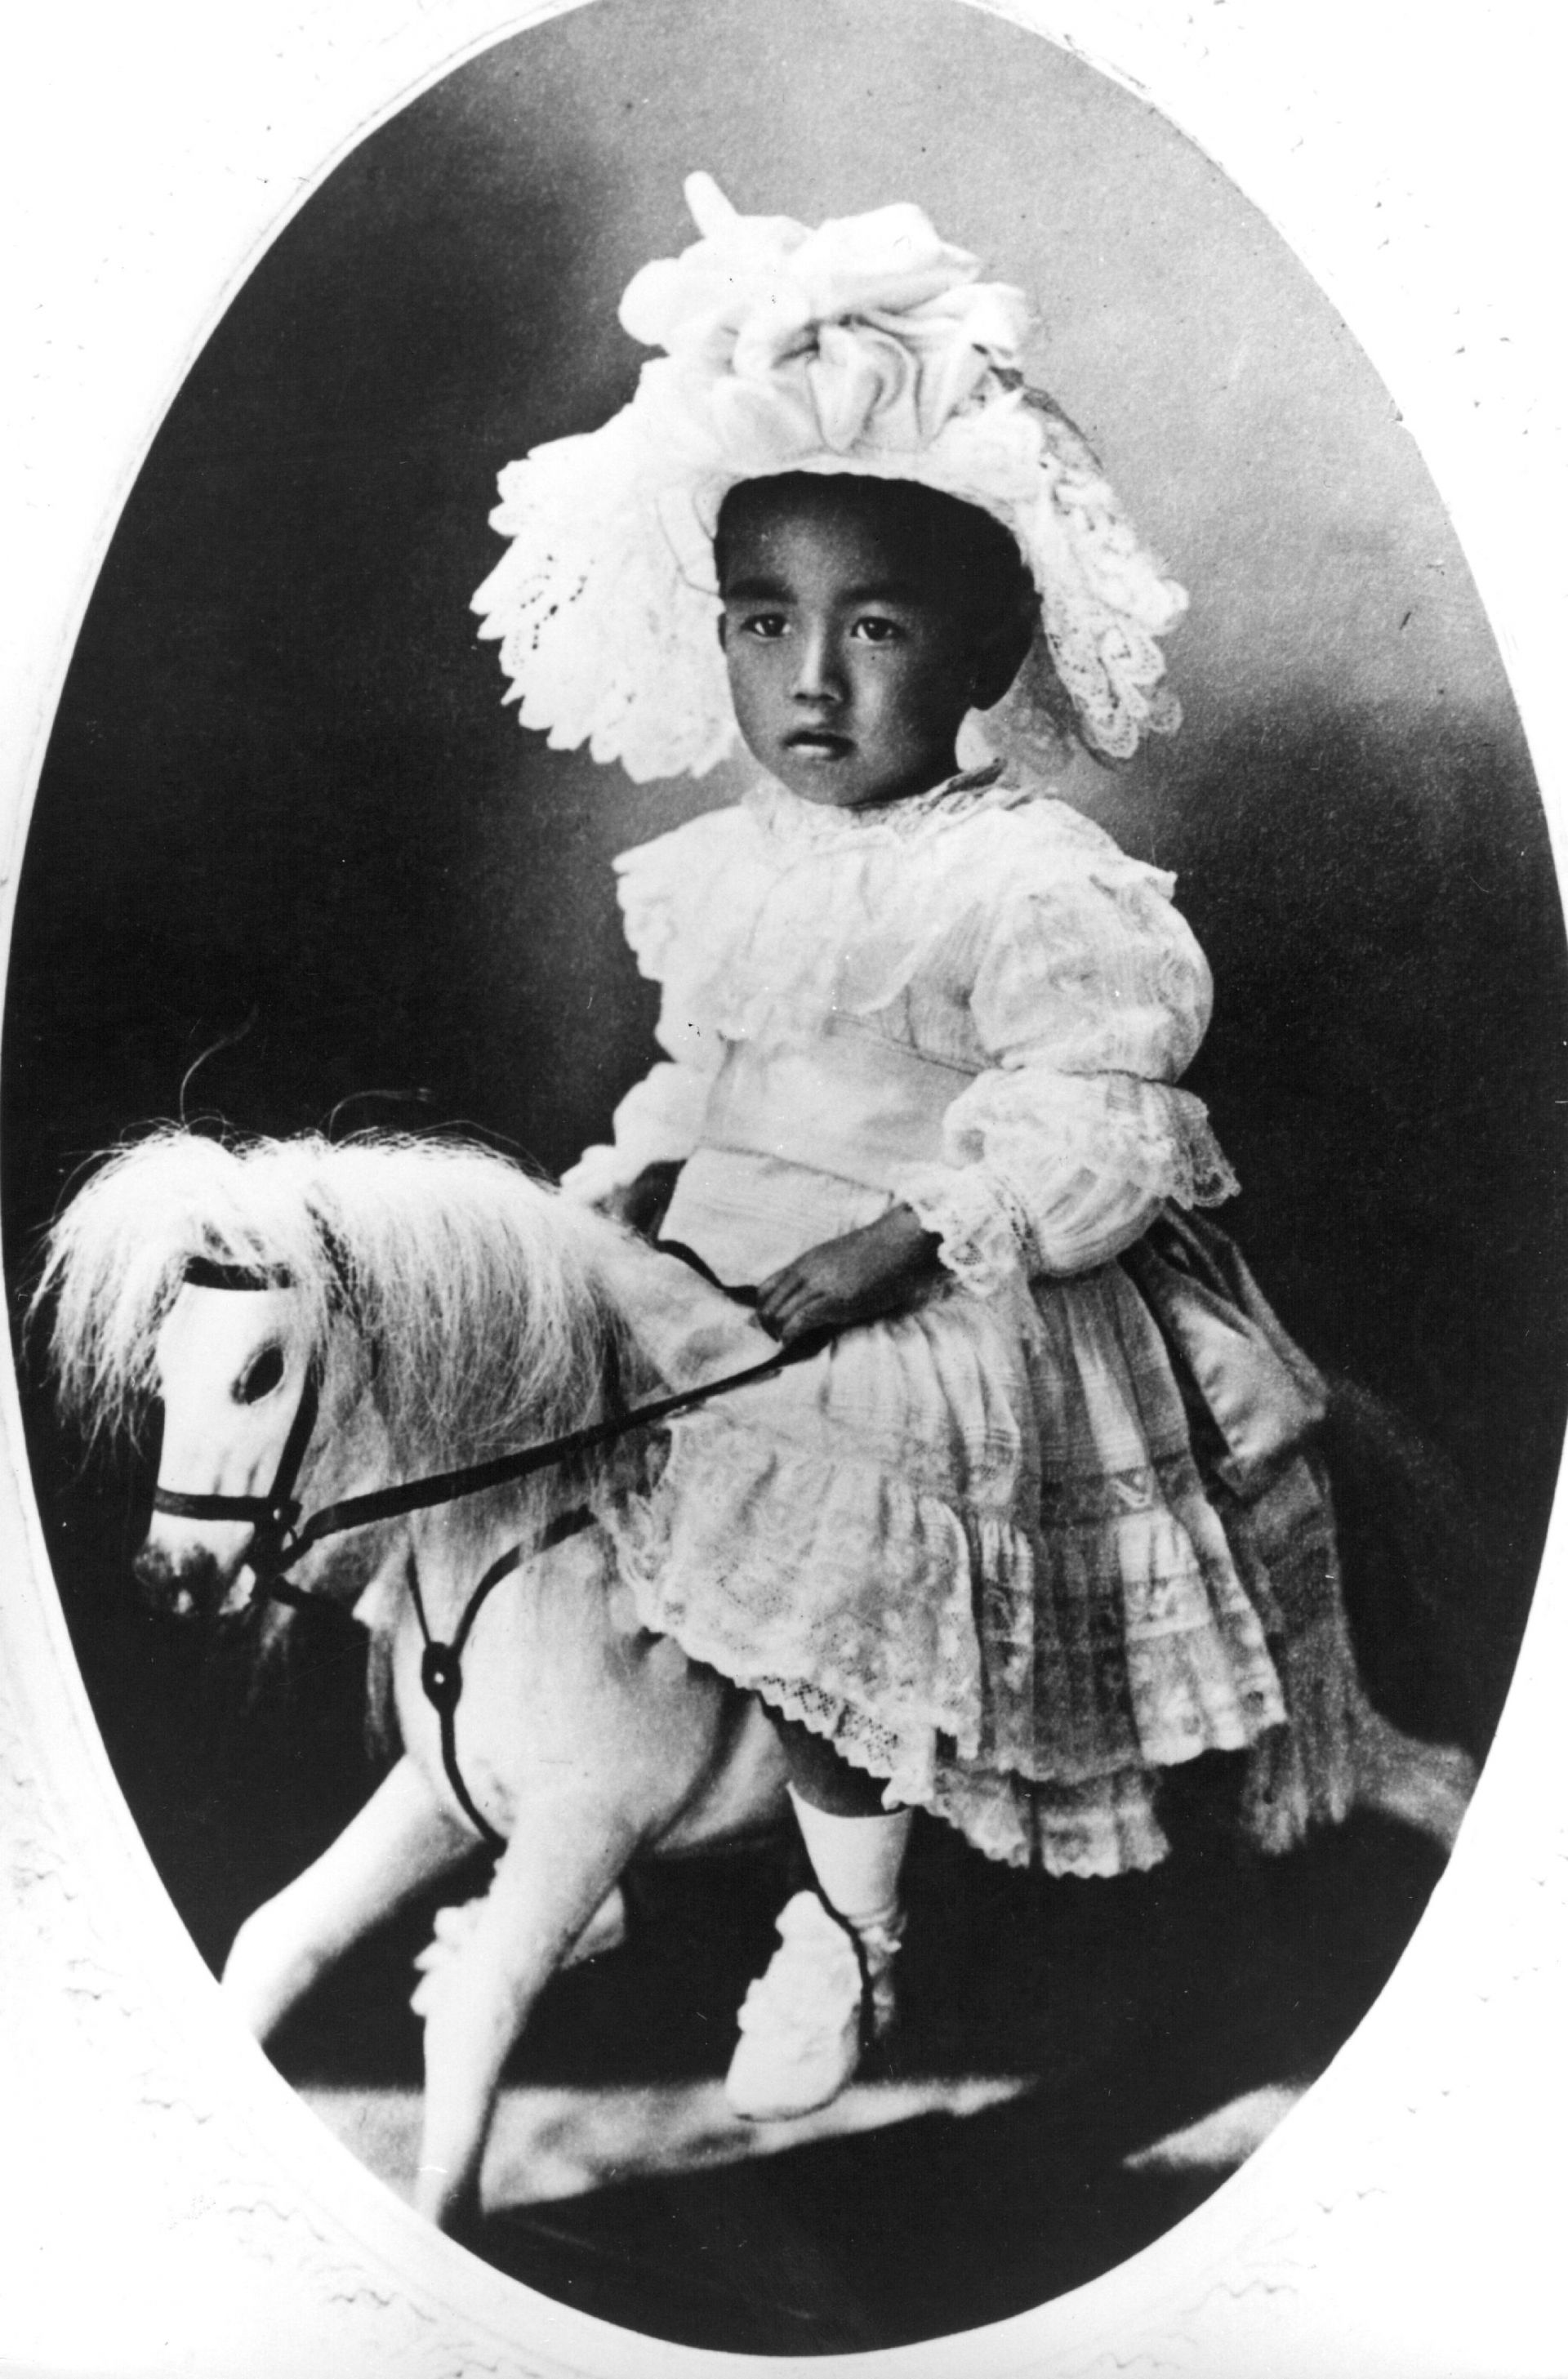  Император Хирохито като малко дете (на три години), возещ се на своя клатещ се кон 